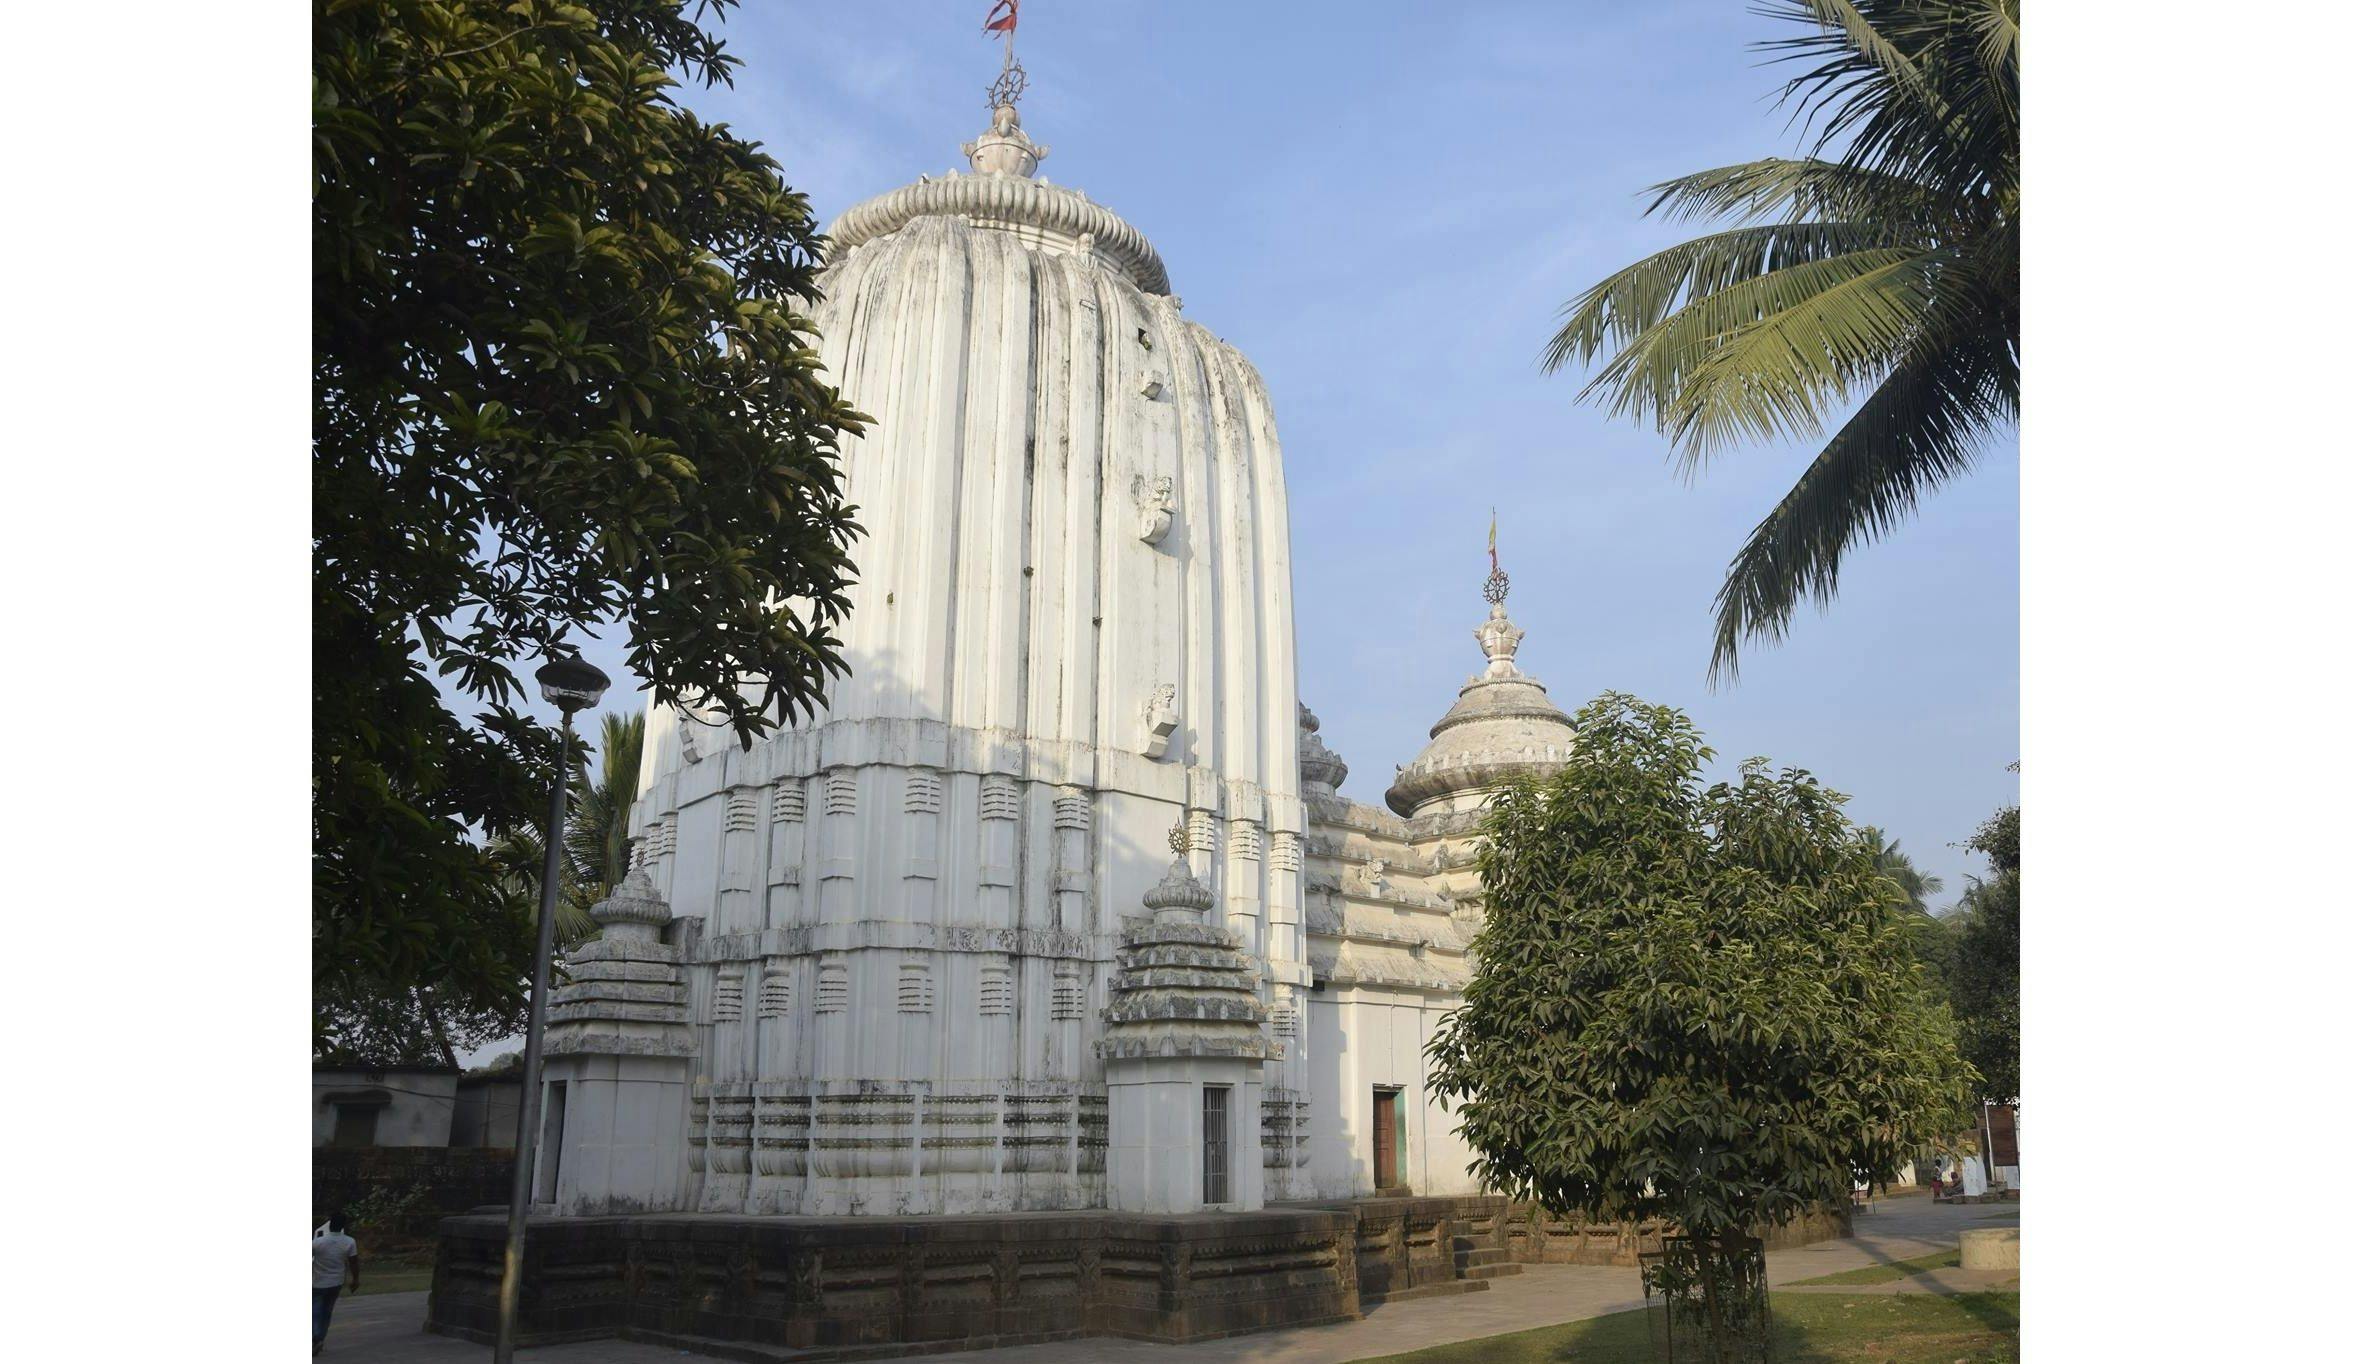 Anangabhima Bhima’s Jagannath Temple